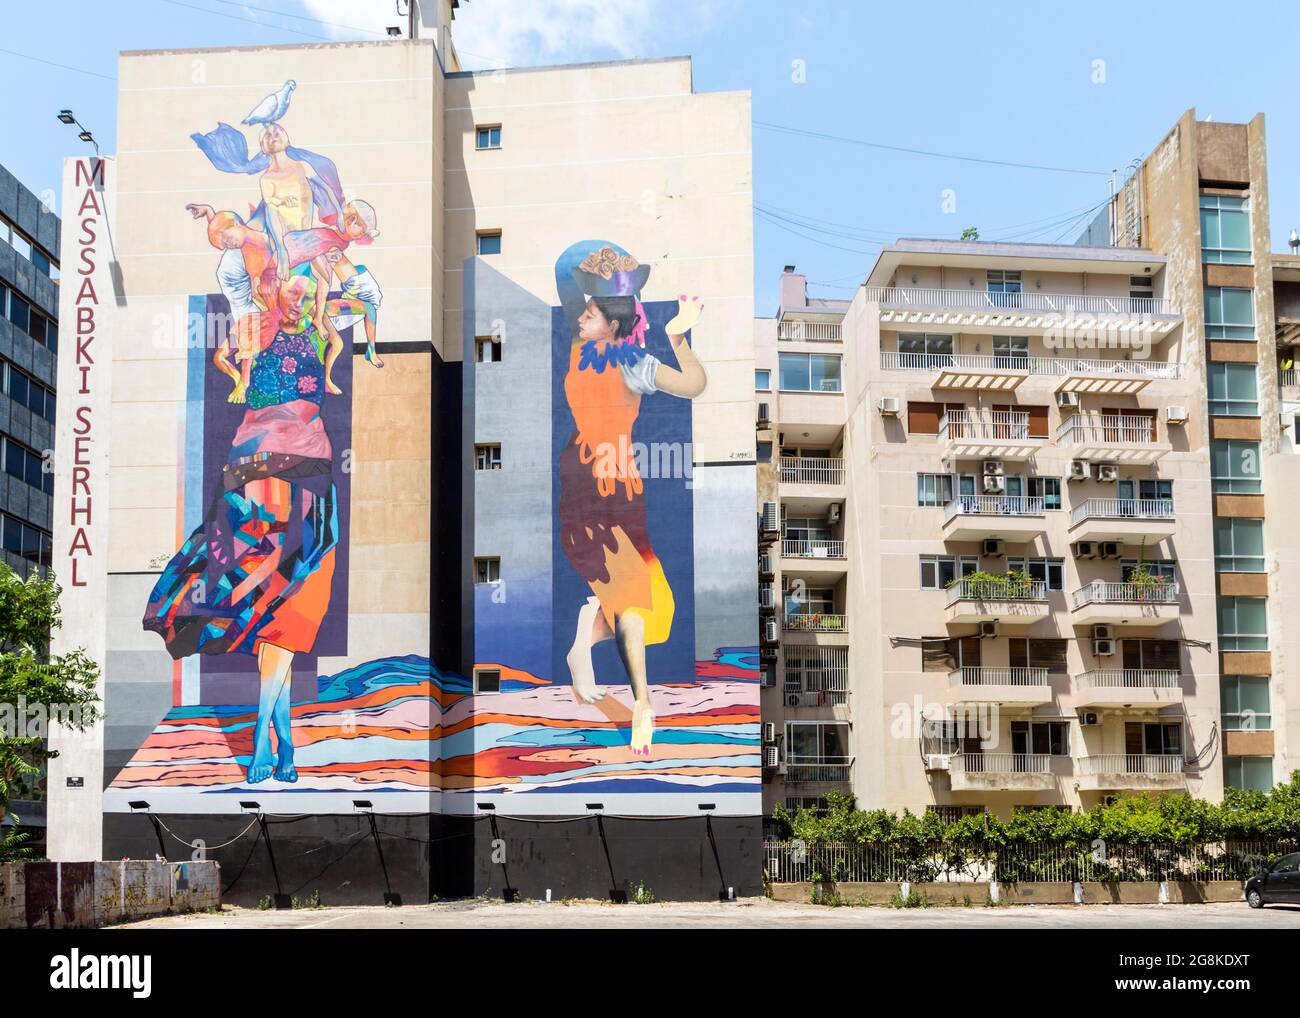 Mural colorido en la calle Hamra de los artistas libaneses Elias Zaarour y Karim Tamerji, parte del proyecto Arte del Cambio de la ONG Ahla Fawda, Beirut, Líbano Foto de stock